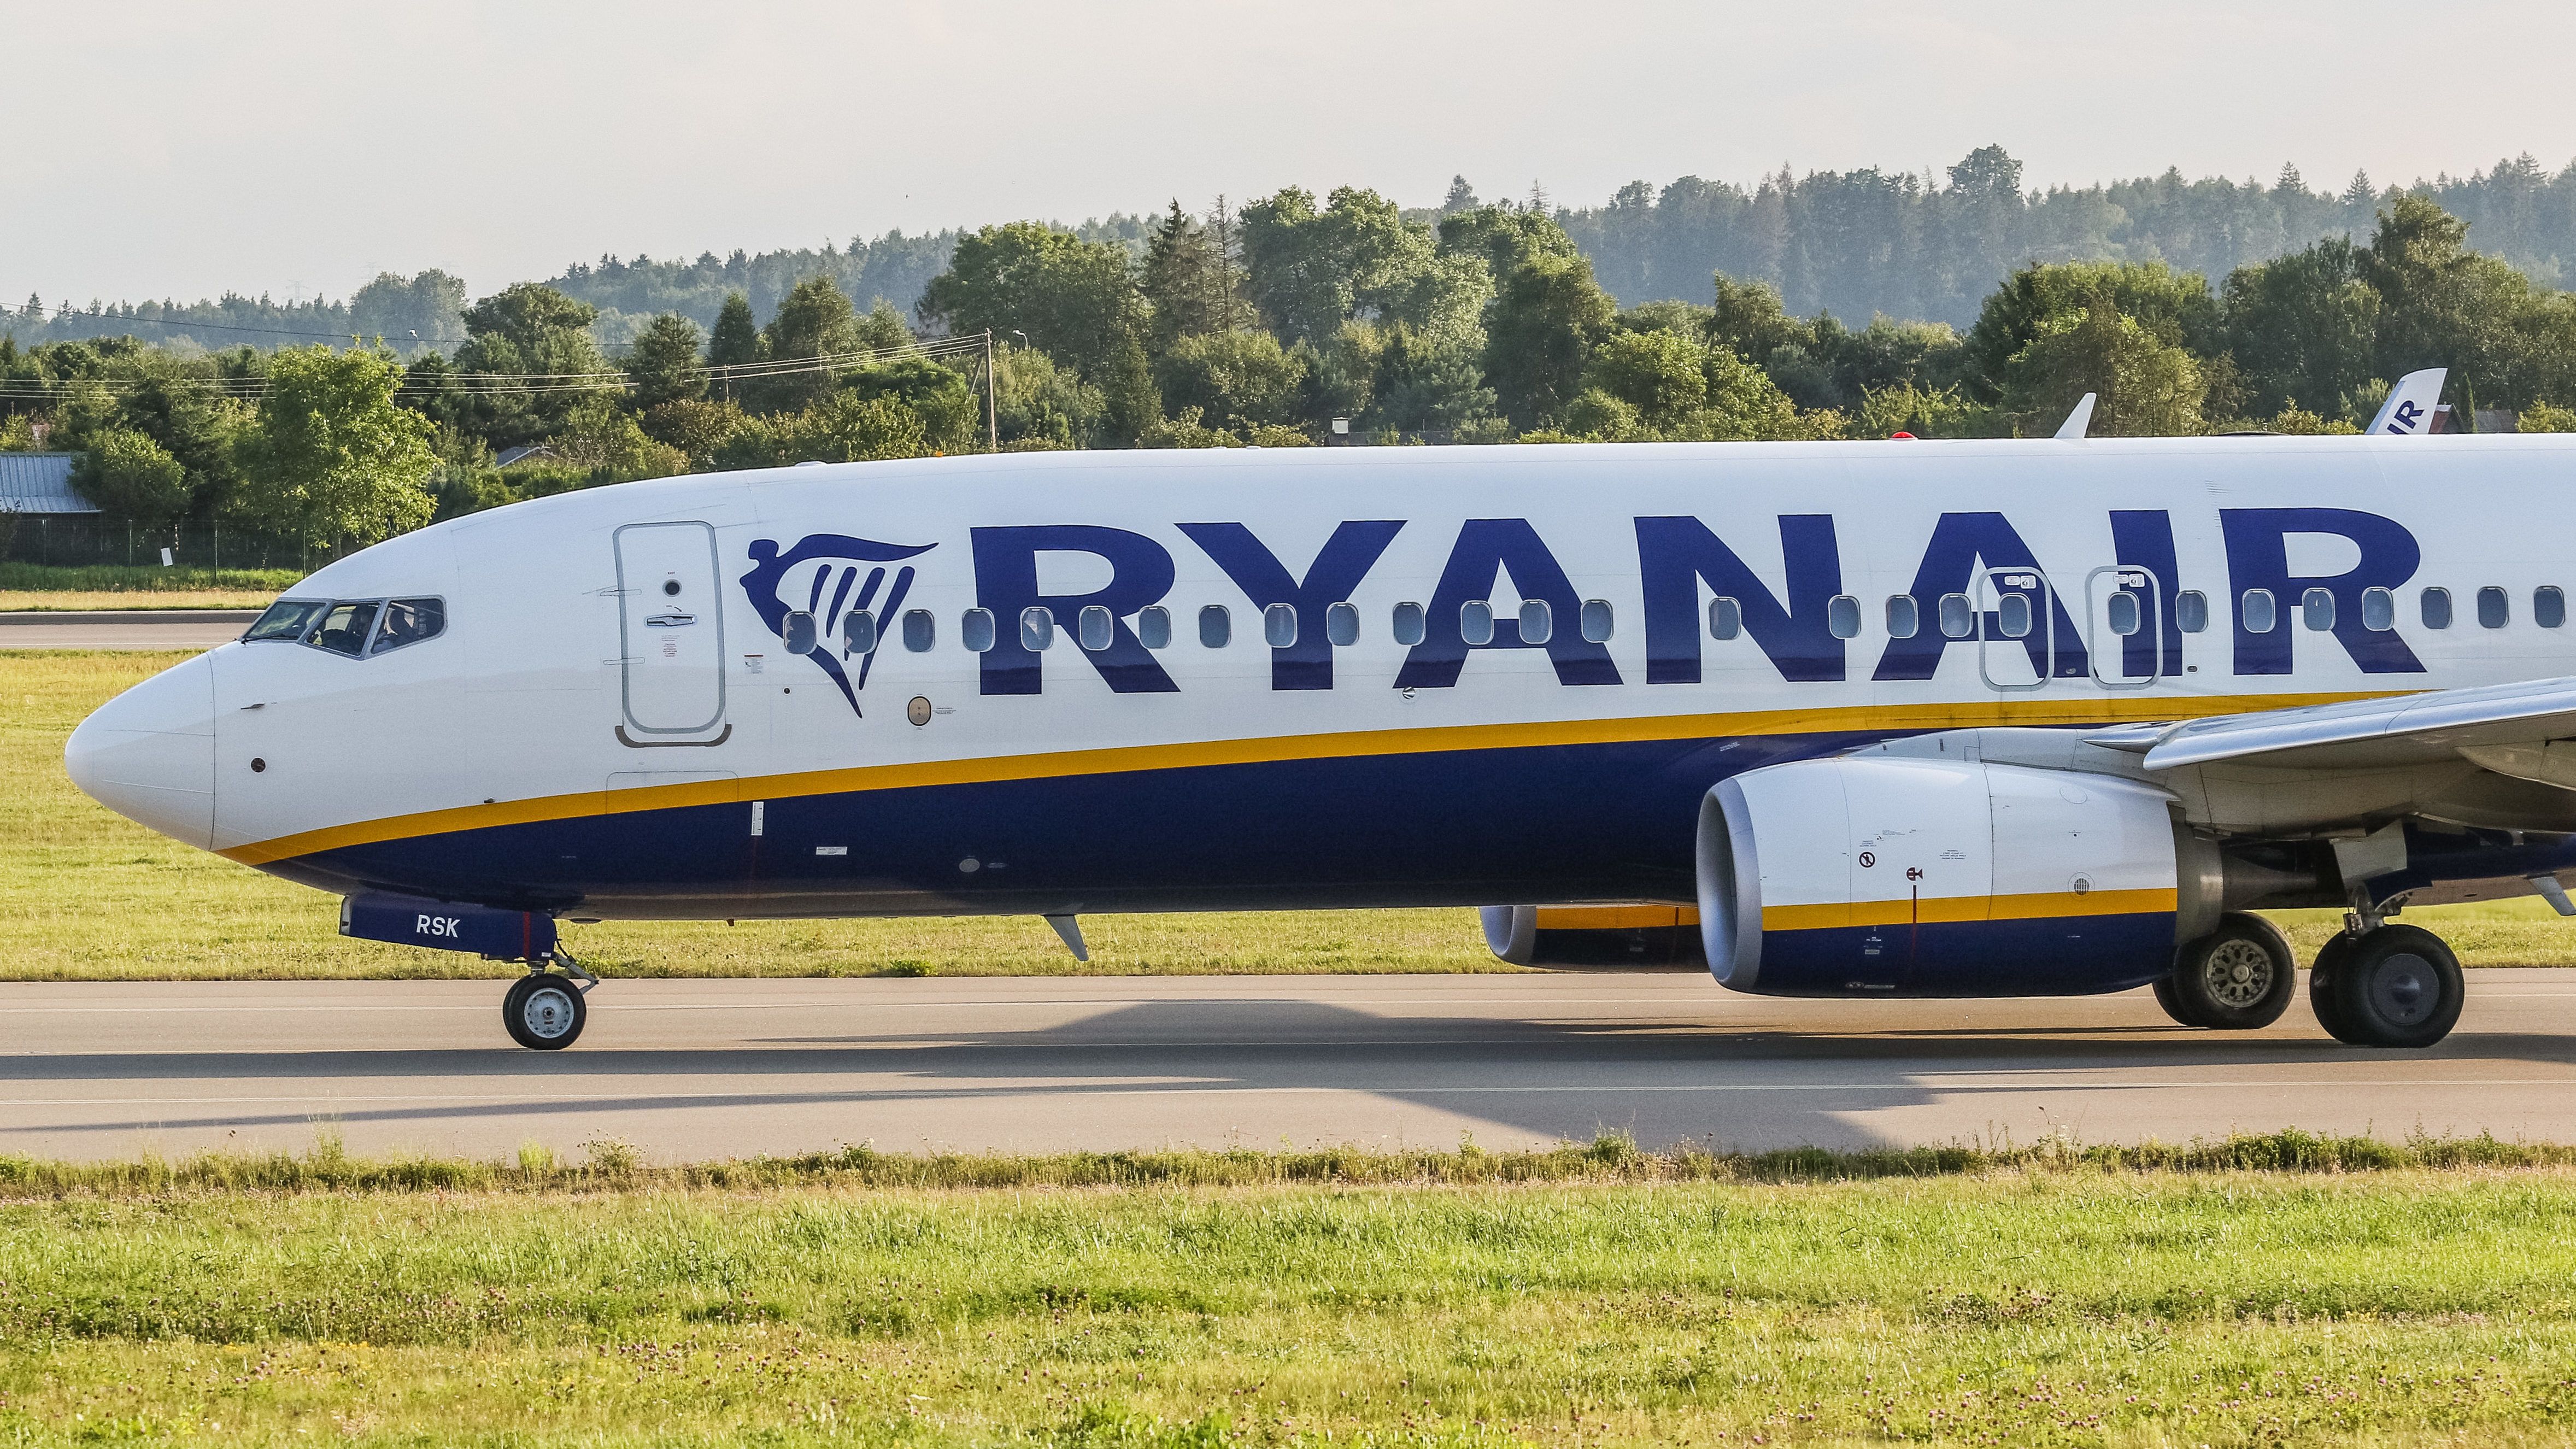 Úgy berúgott a Ryanair utasa, hogy leszállás után azt hitte, még mindig Spanyolországban van